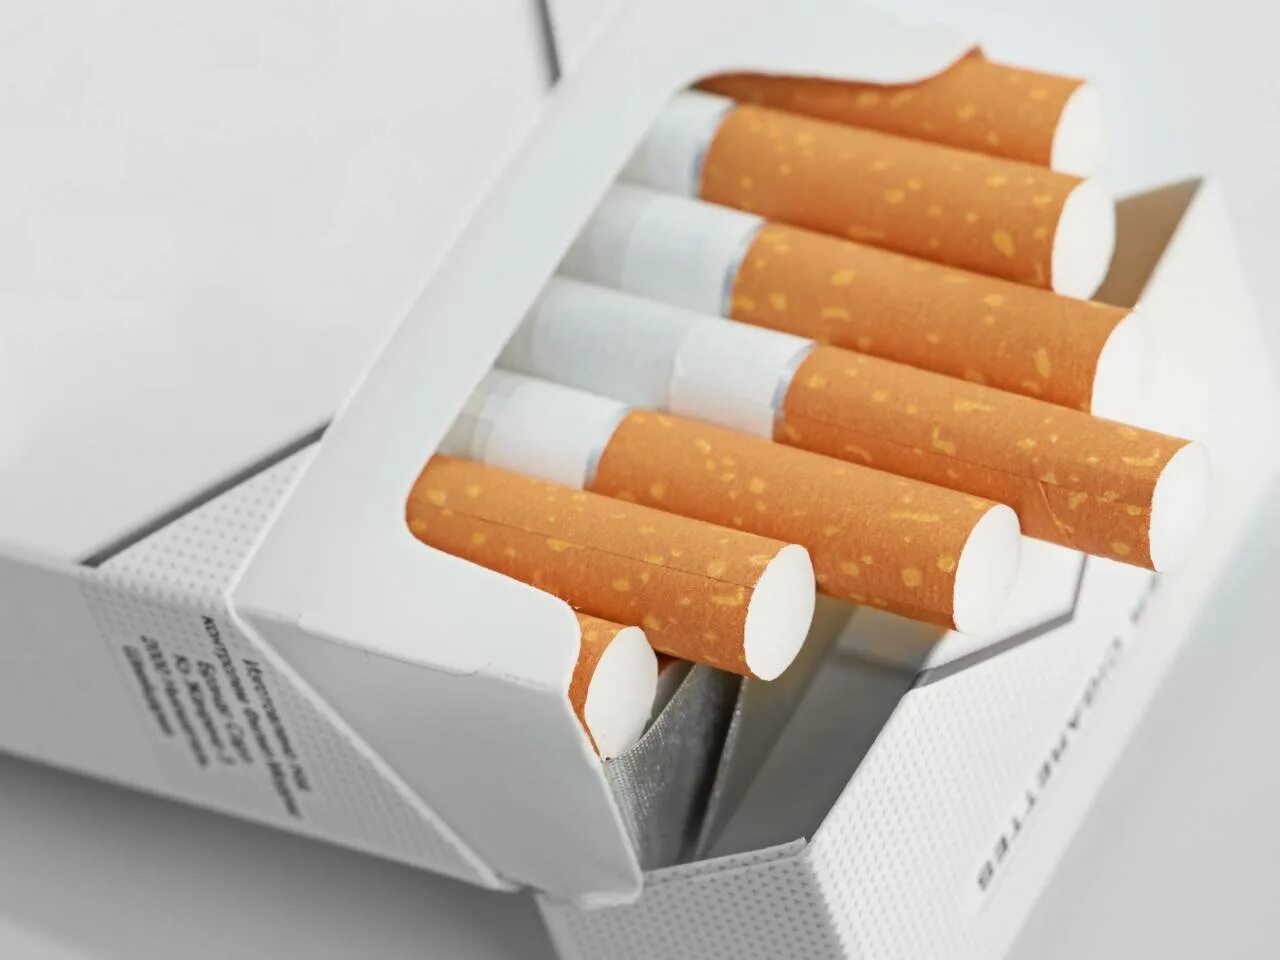 Альтернативная табачная продукция это. Сигареты. Пачка сигарет. Табачная продукция. Табачные изделия сигареты.